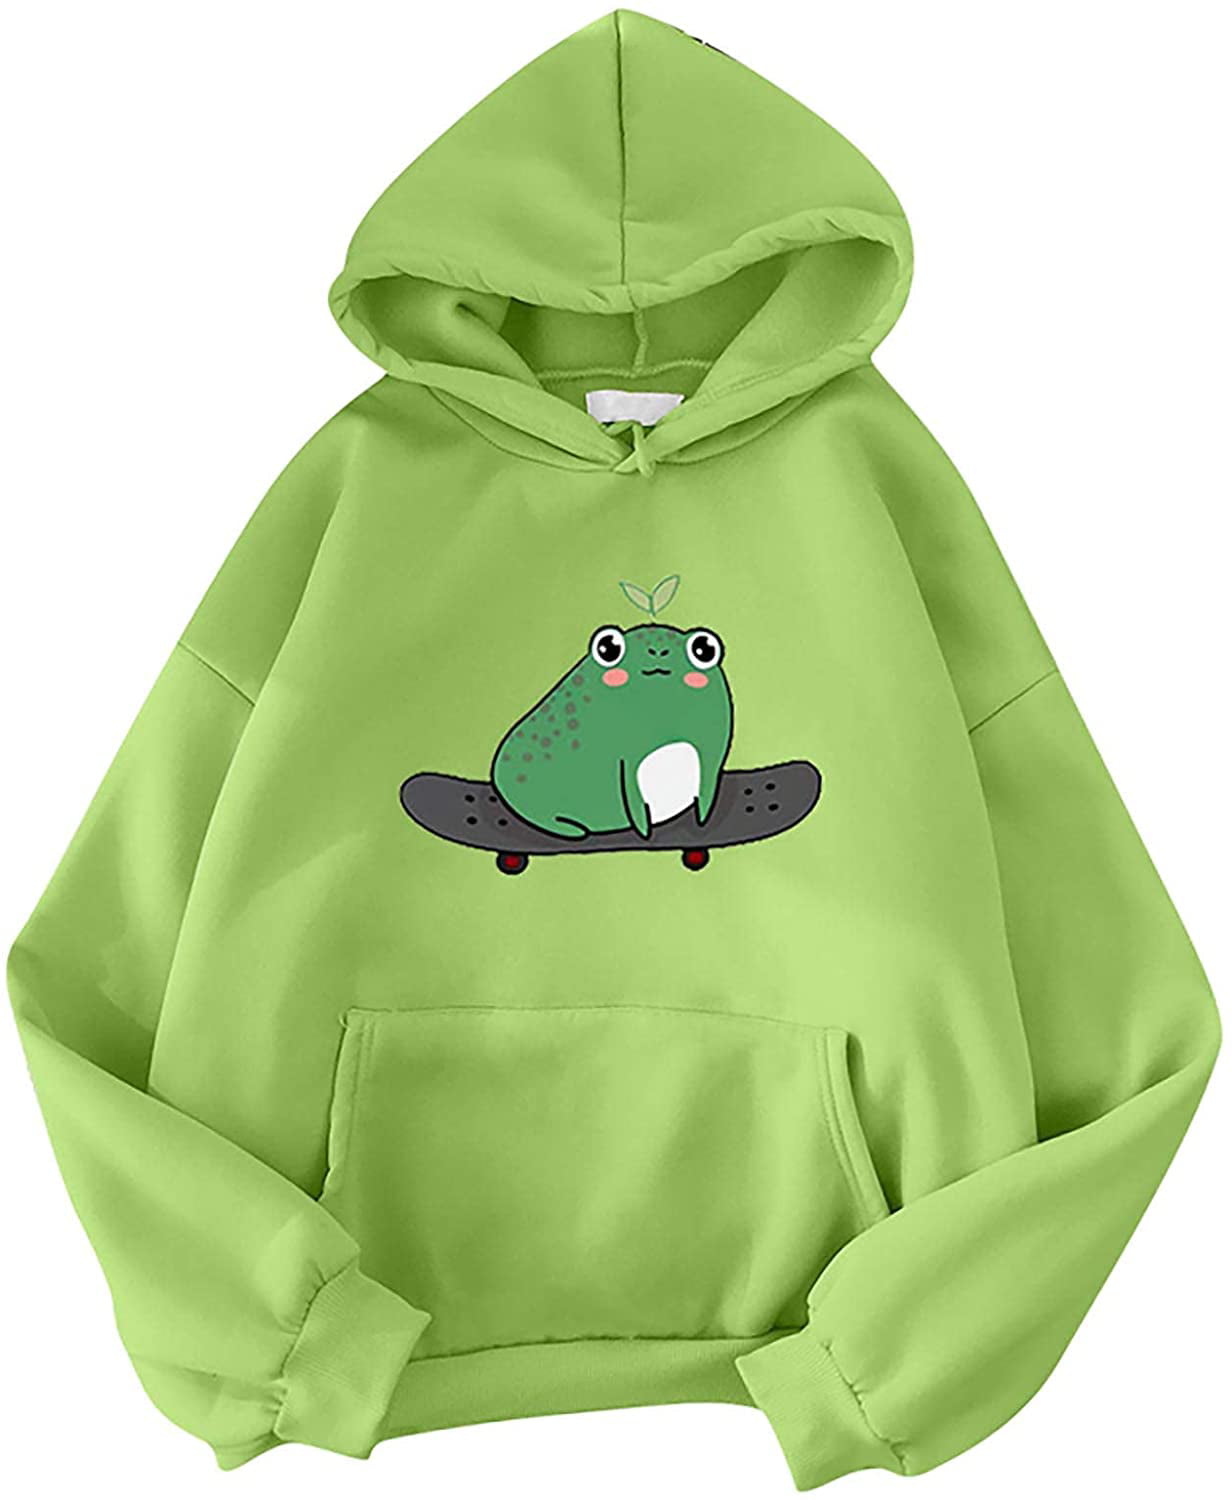 Womens Cute Hoodies Frog Skateboard Printing Patchwork Long Sleeve Drawstring Hooded Sweatshirt Pullover Tops 